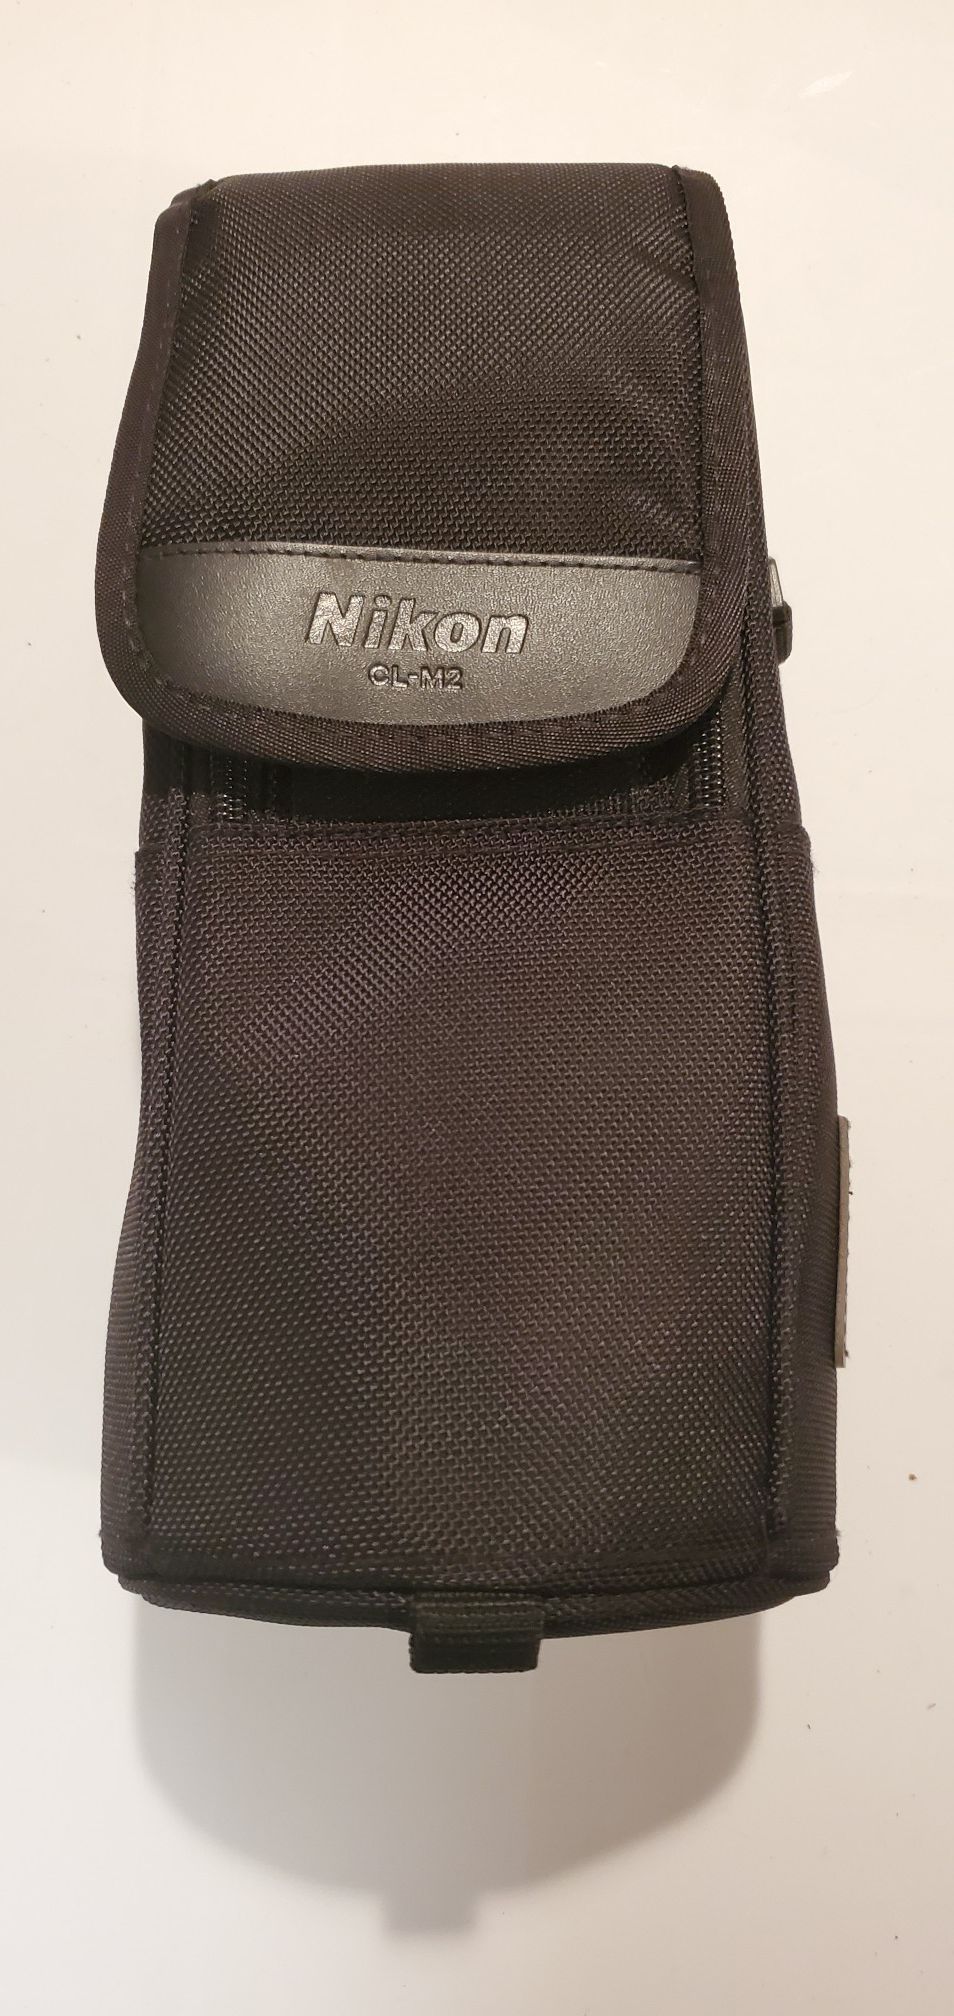 Nikon CL-M2 Ballistic Nylon Lens Case for 300mm f/4D AF-S Lens & 70-200mm f/2.8 VR Lens